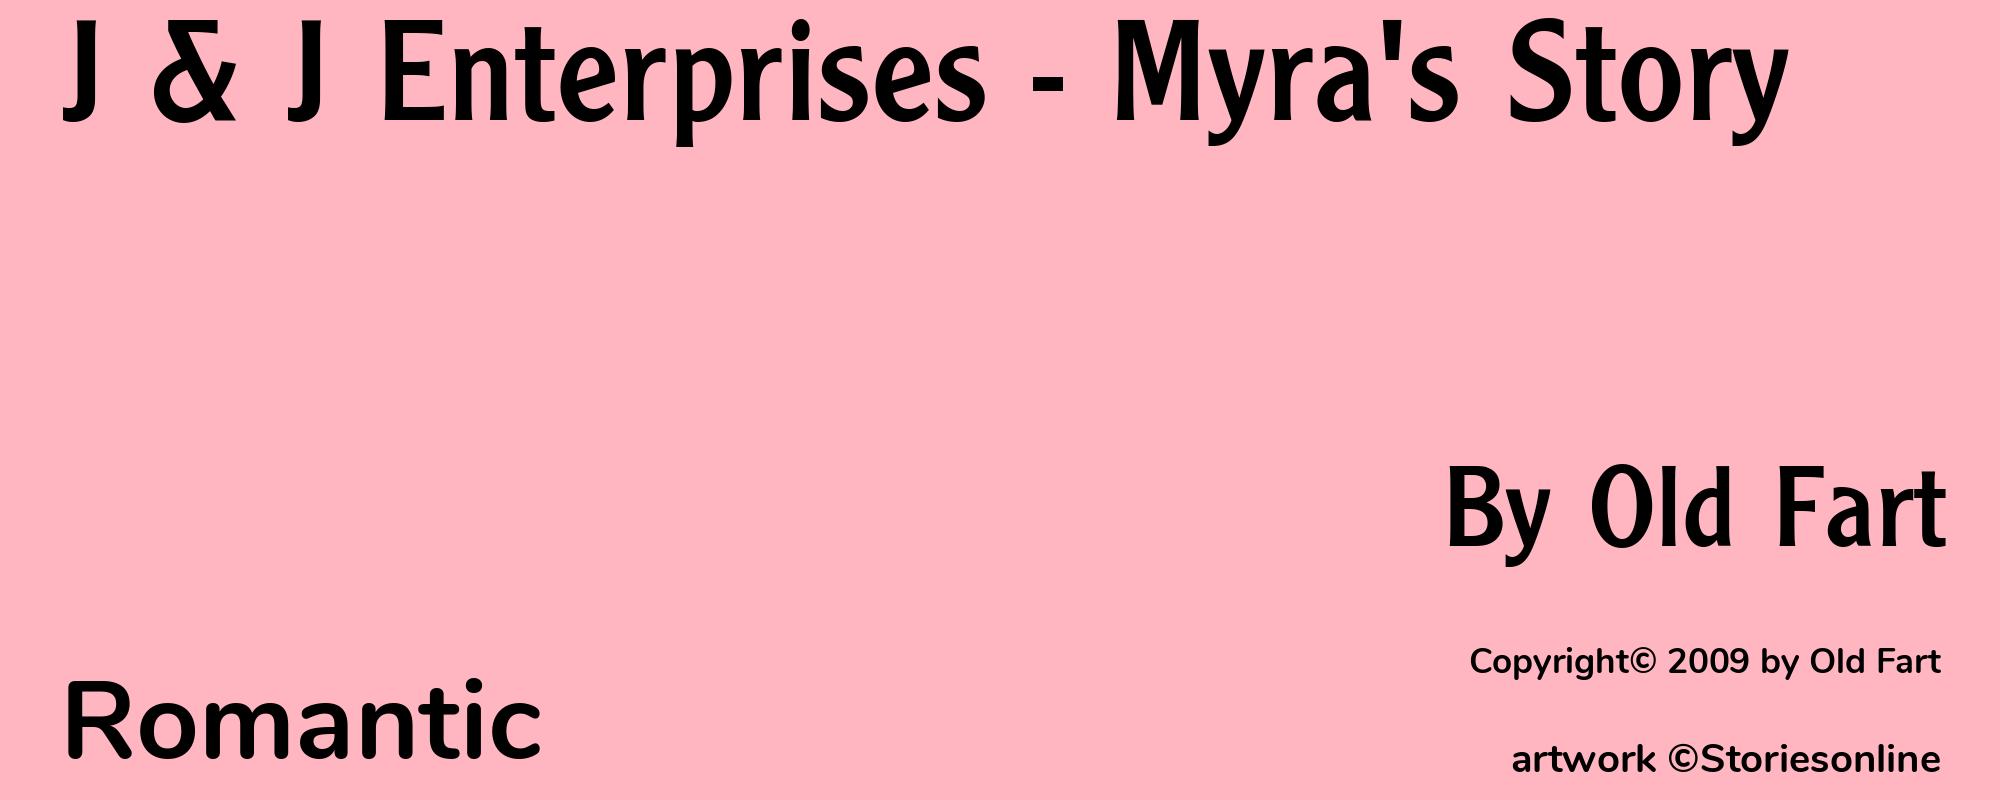 J & J Enterprises - Myra's Story - Cover